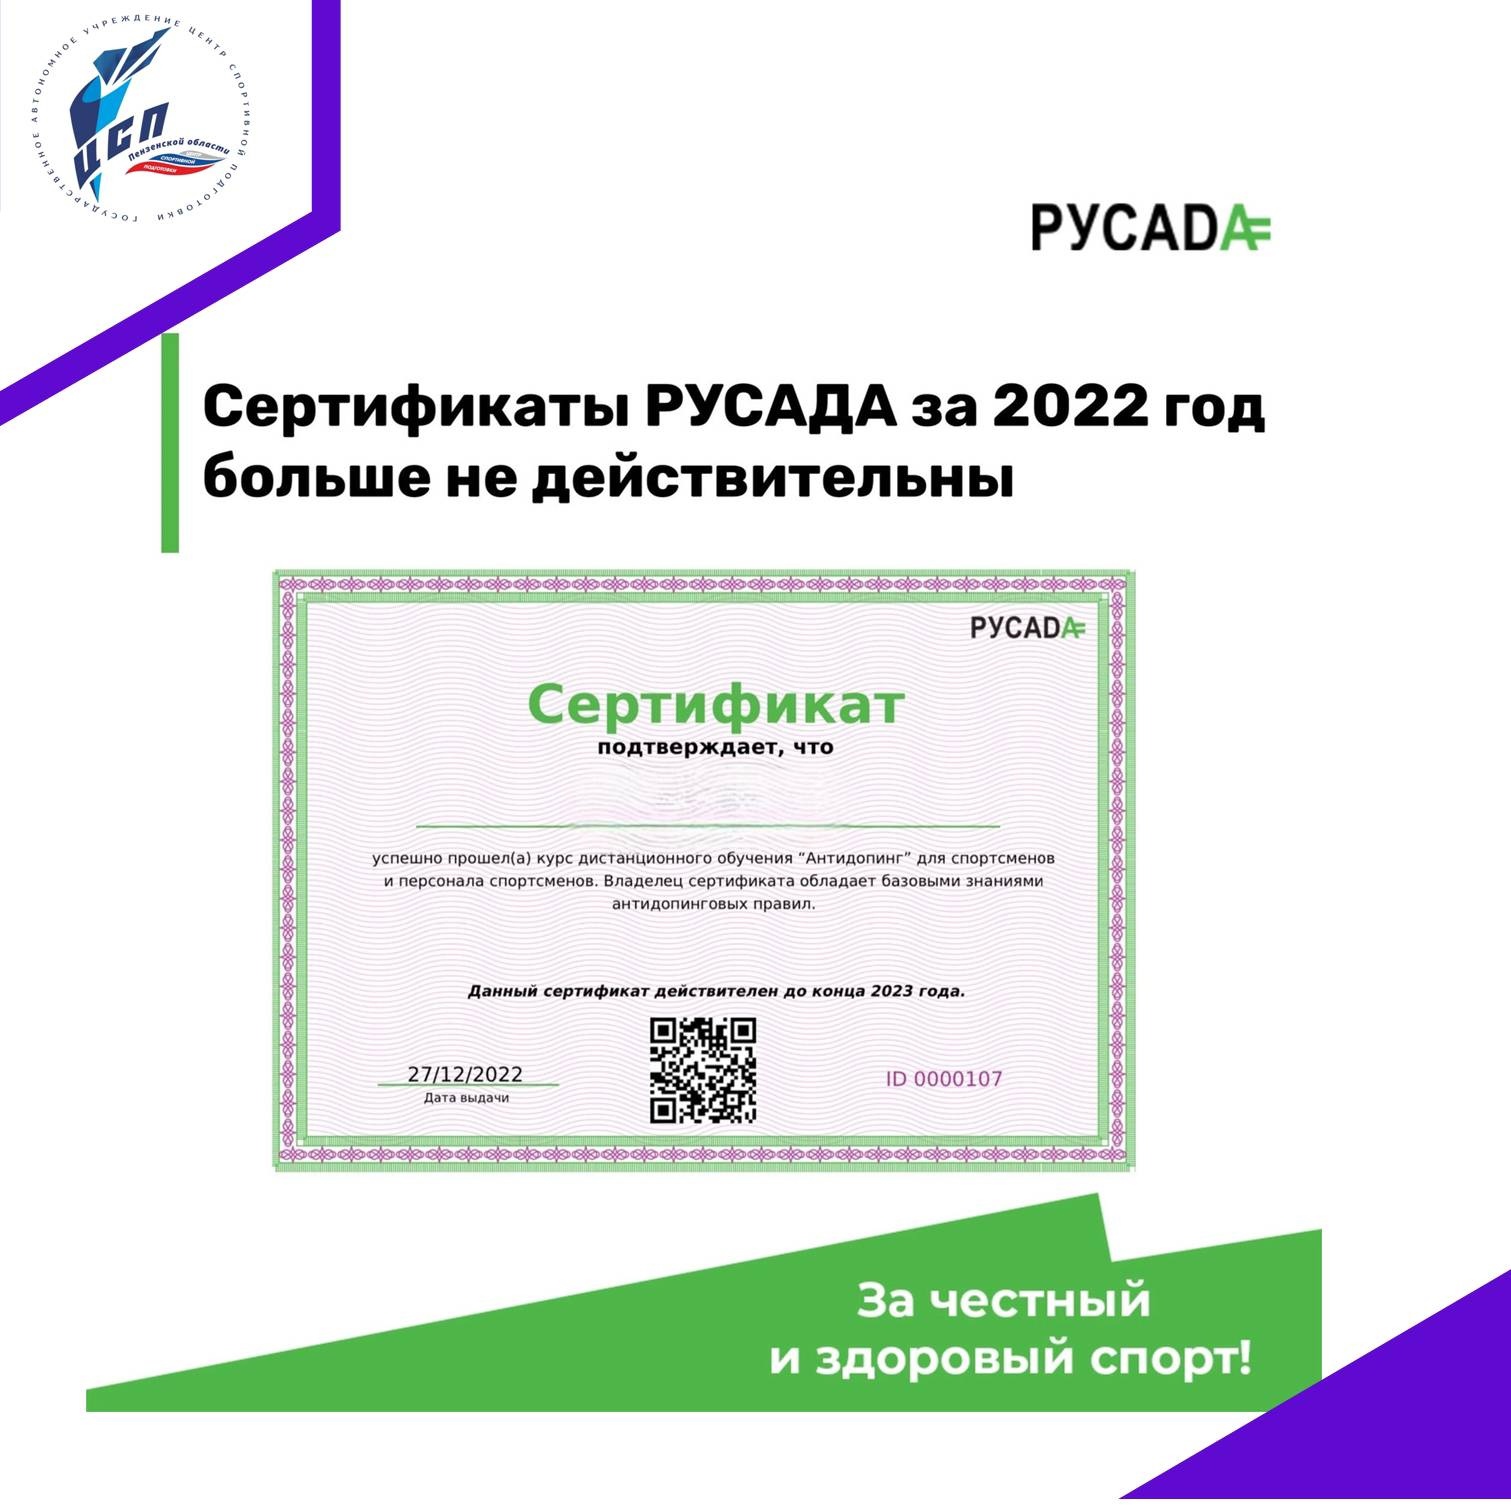 Русада пройти антидопинговый тест для получения сертификата. Сертификат РУСАДА. Сертификат РУСАДА 2023. РУСАДА 2022. Сертификат РУСАДА антидопинг.